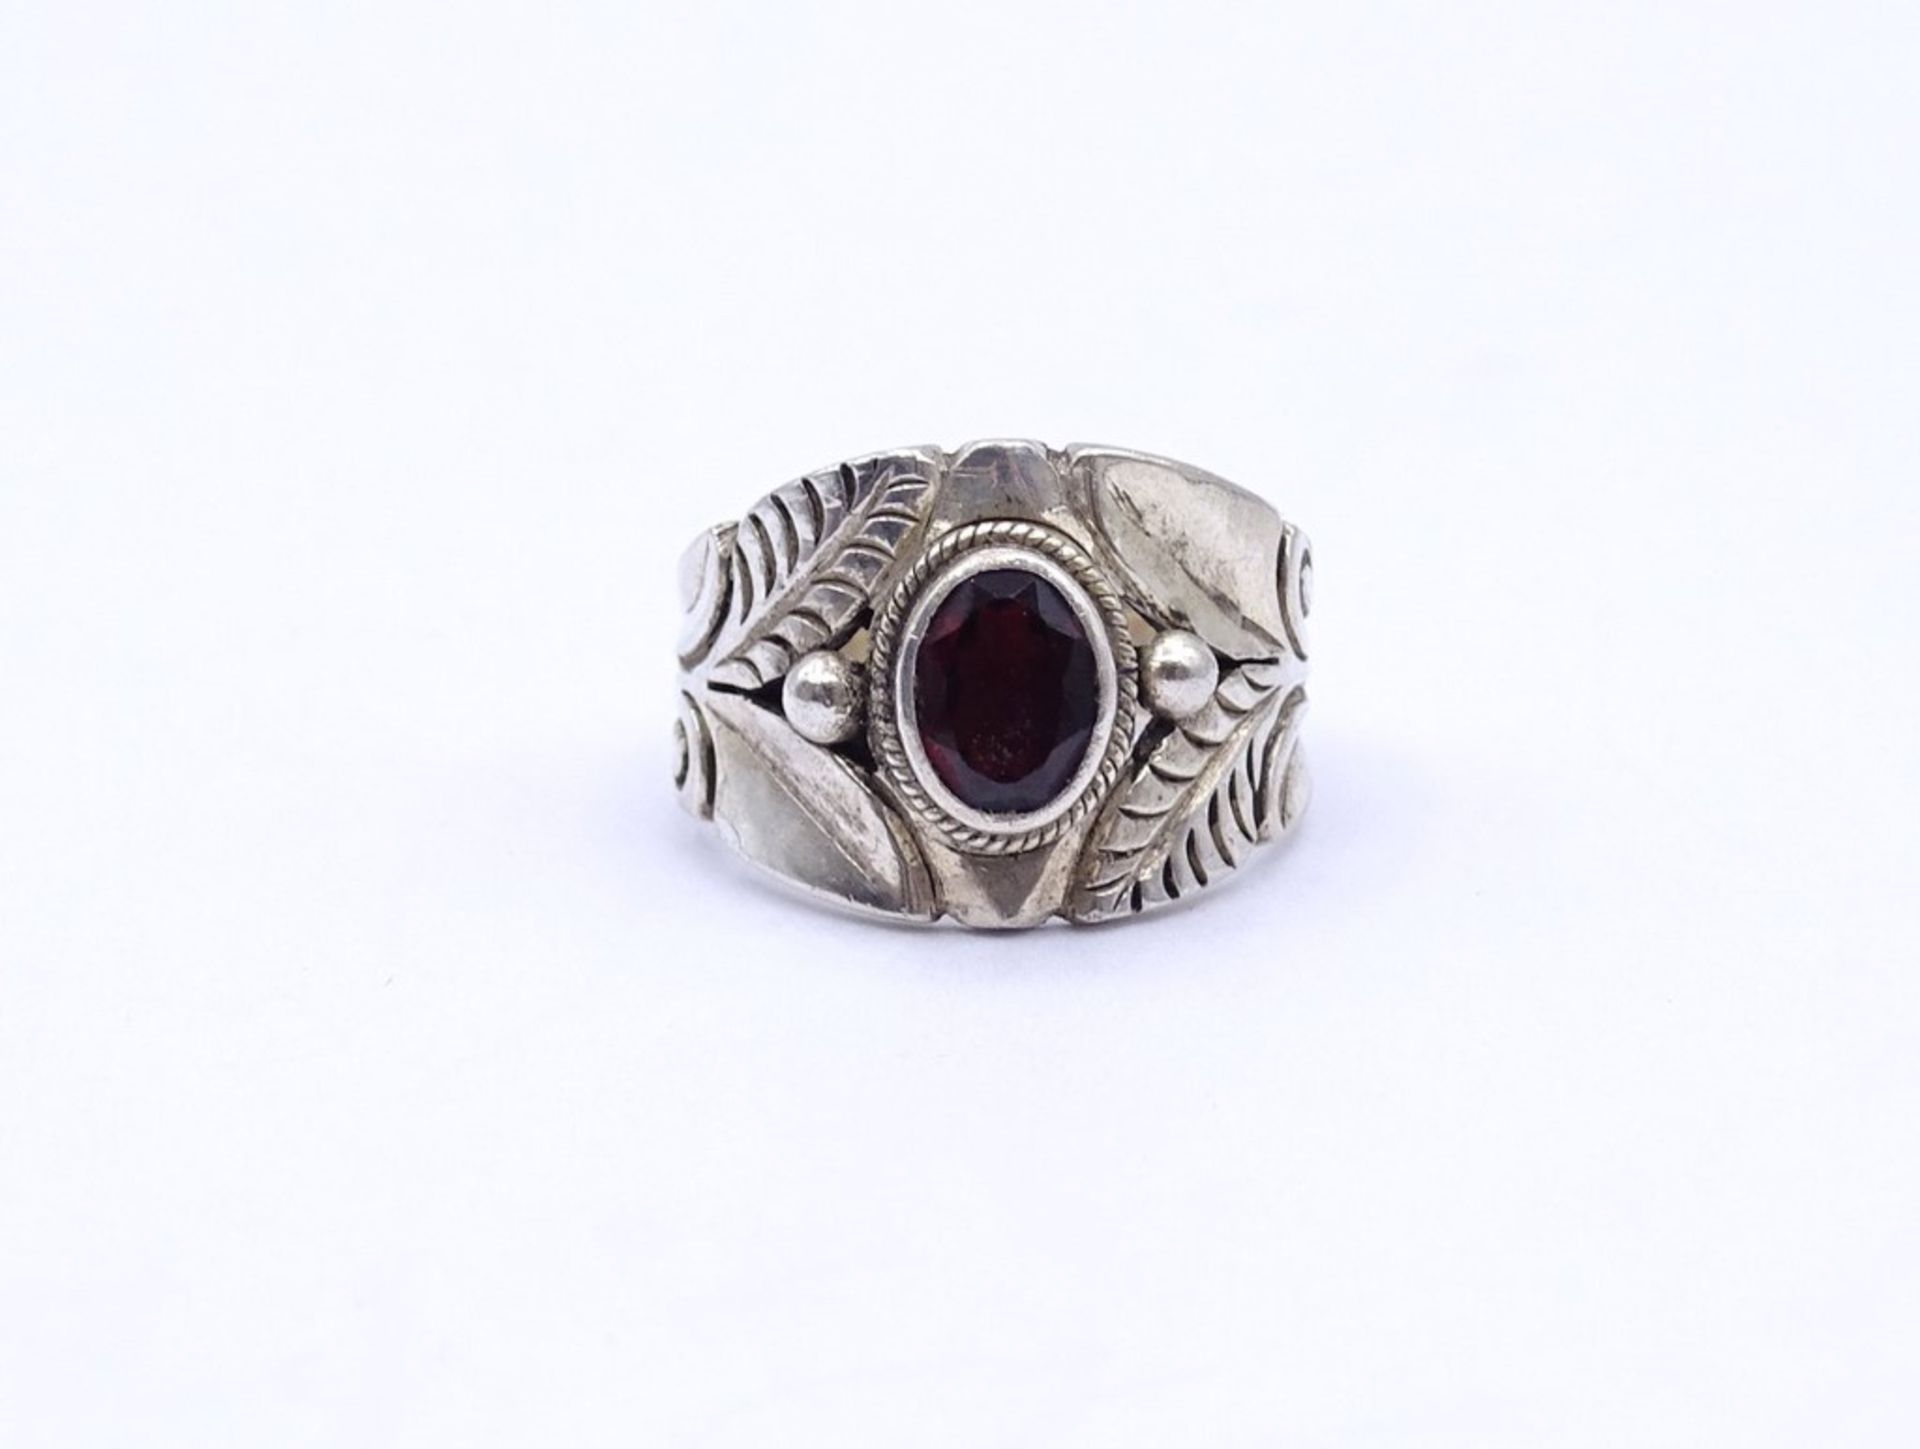 Silber Ring mit einen oval facc. Granat, Silber 0.925, 7,3g.